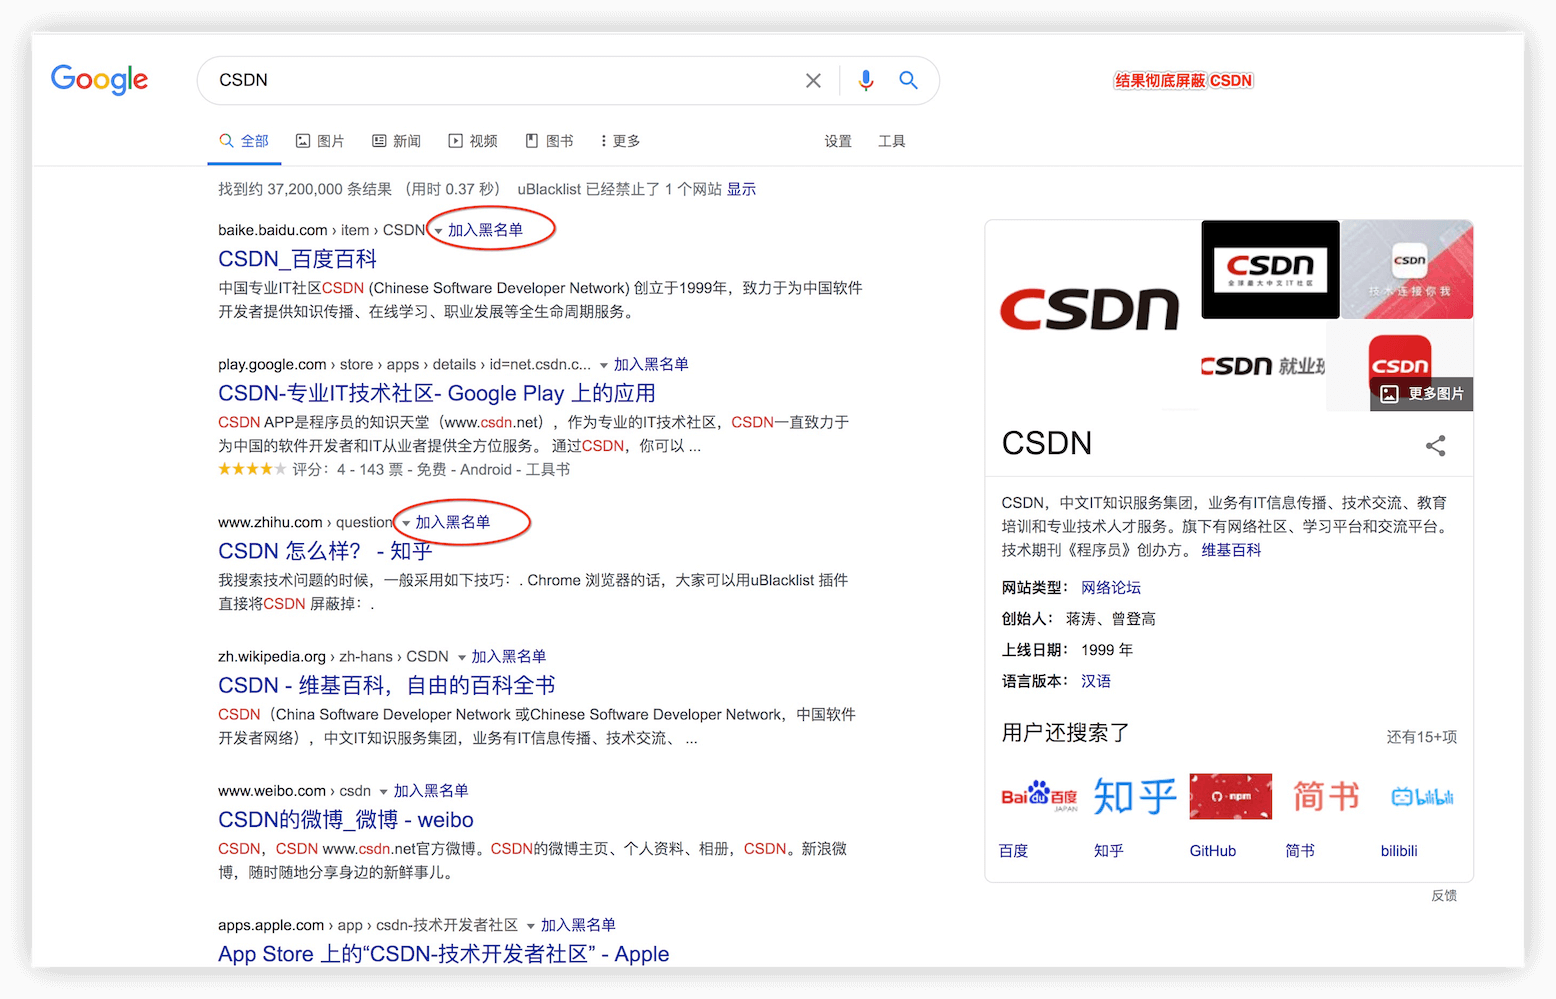  如何在 Google 中文搜索结果屏蔽 CSDN